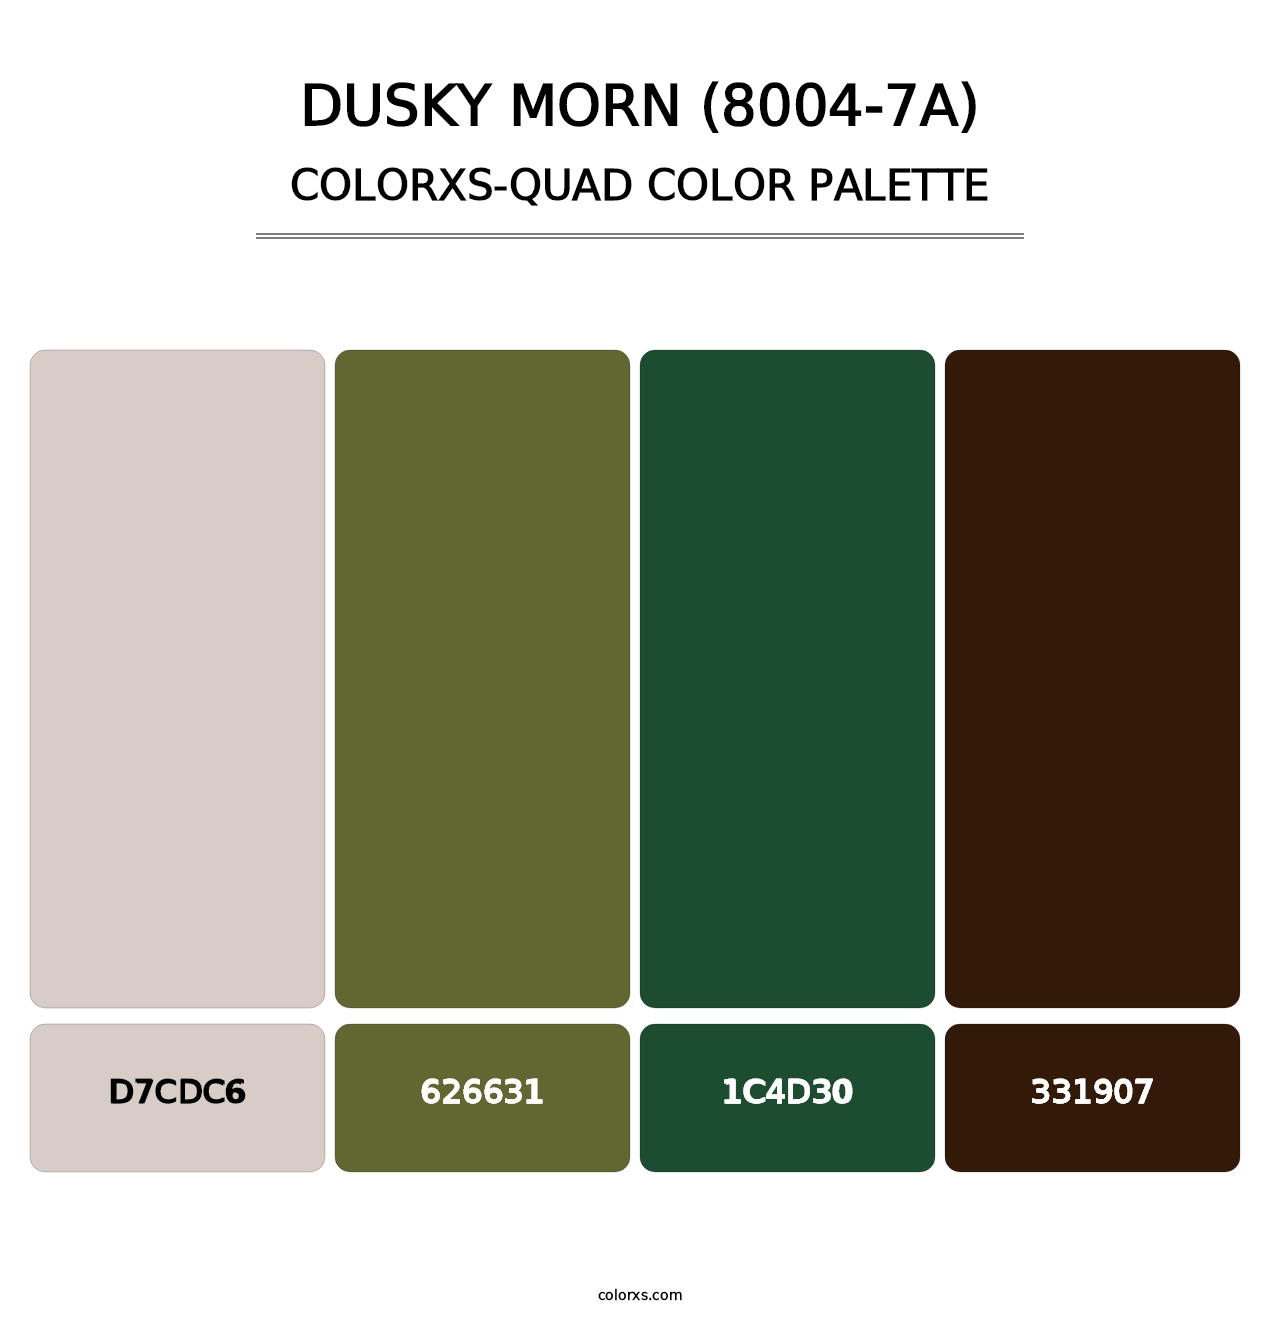 Dusky Morn (8004-7A) - Colorxs Quad Palette